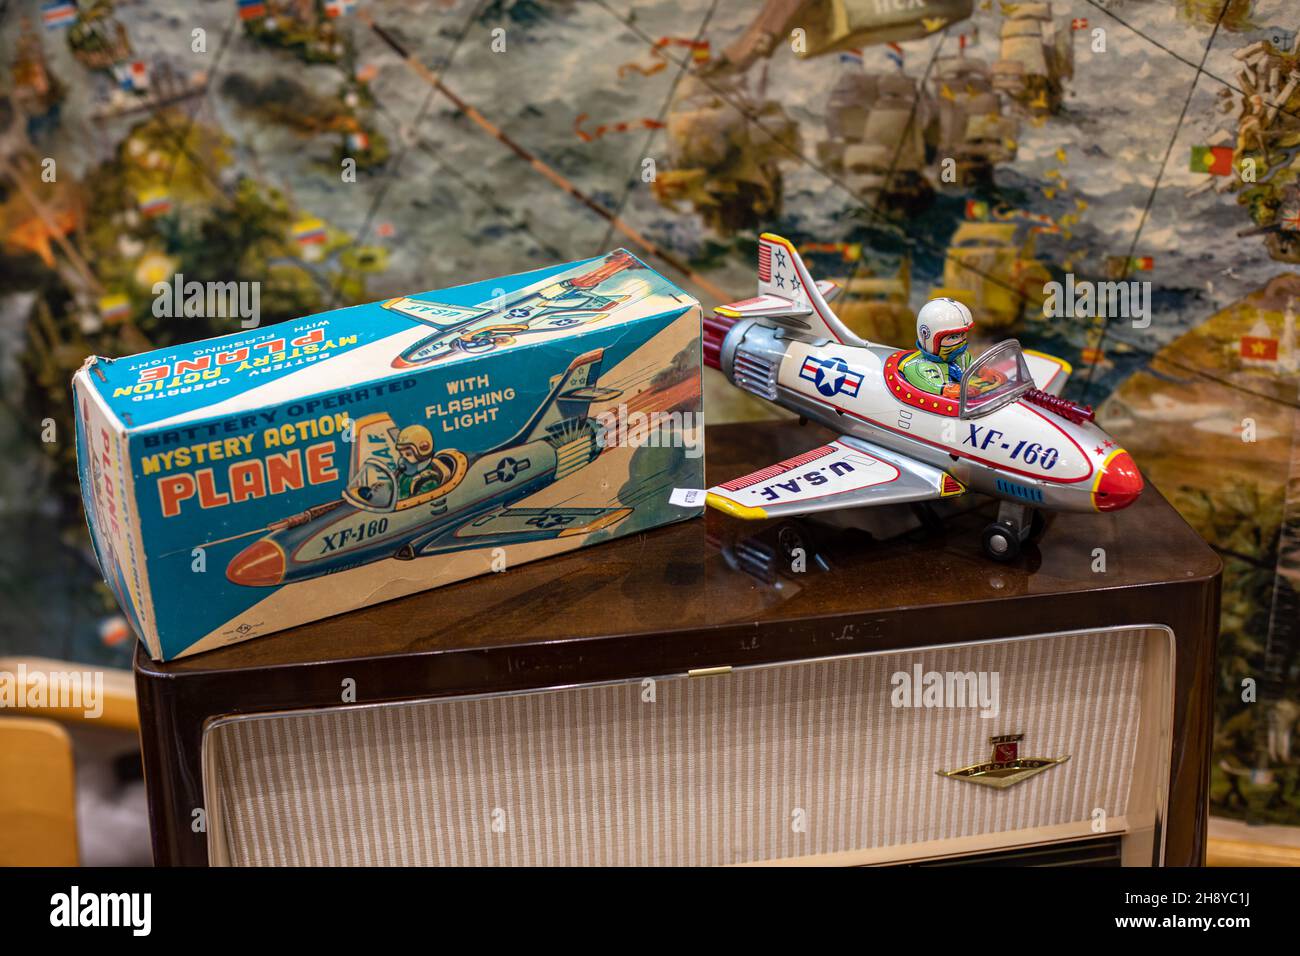 Plan d'action mystère XF-160 avec lumière clignotante. Jouet en étain vintage alimenté par batterie en vente à l'exposition Retro & Vintage Design à Helsinki, en Finlande. Banque D'Images